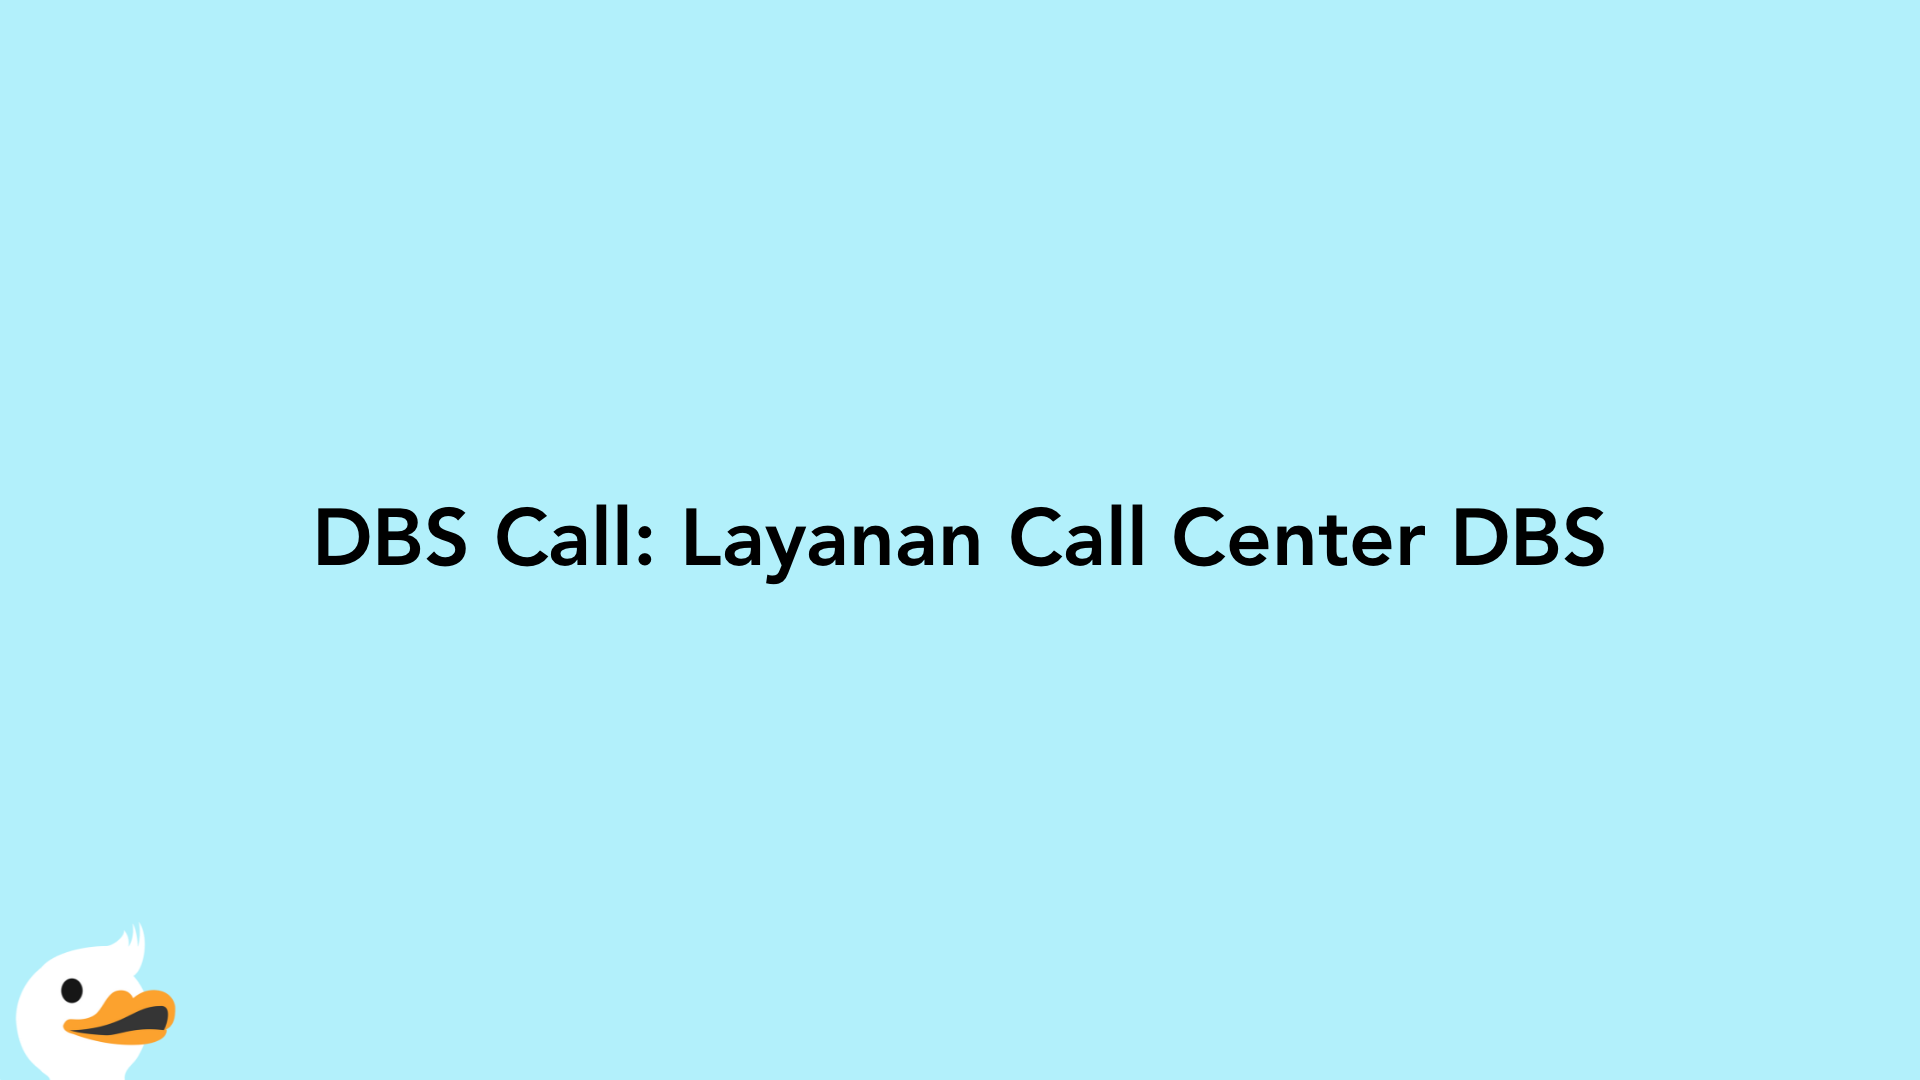 DBS Call: Layanan Call Center DBS